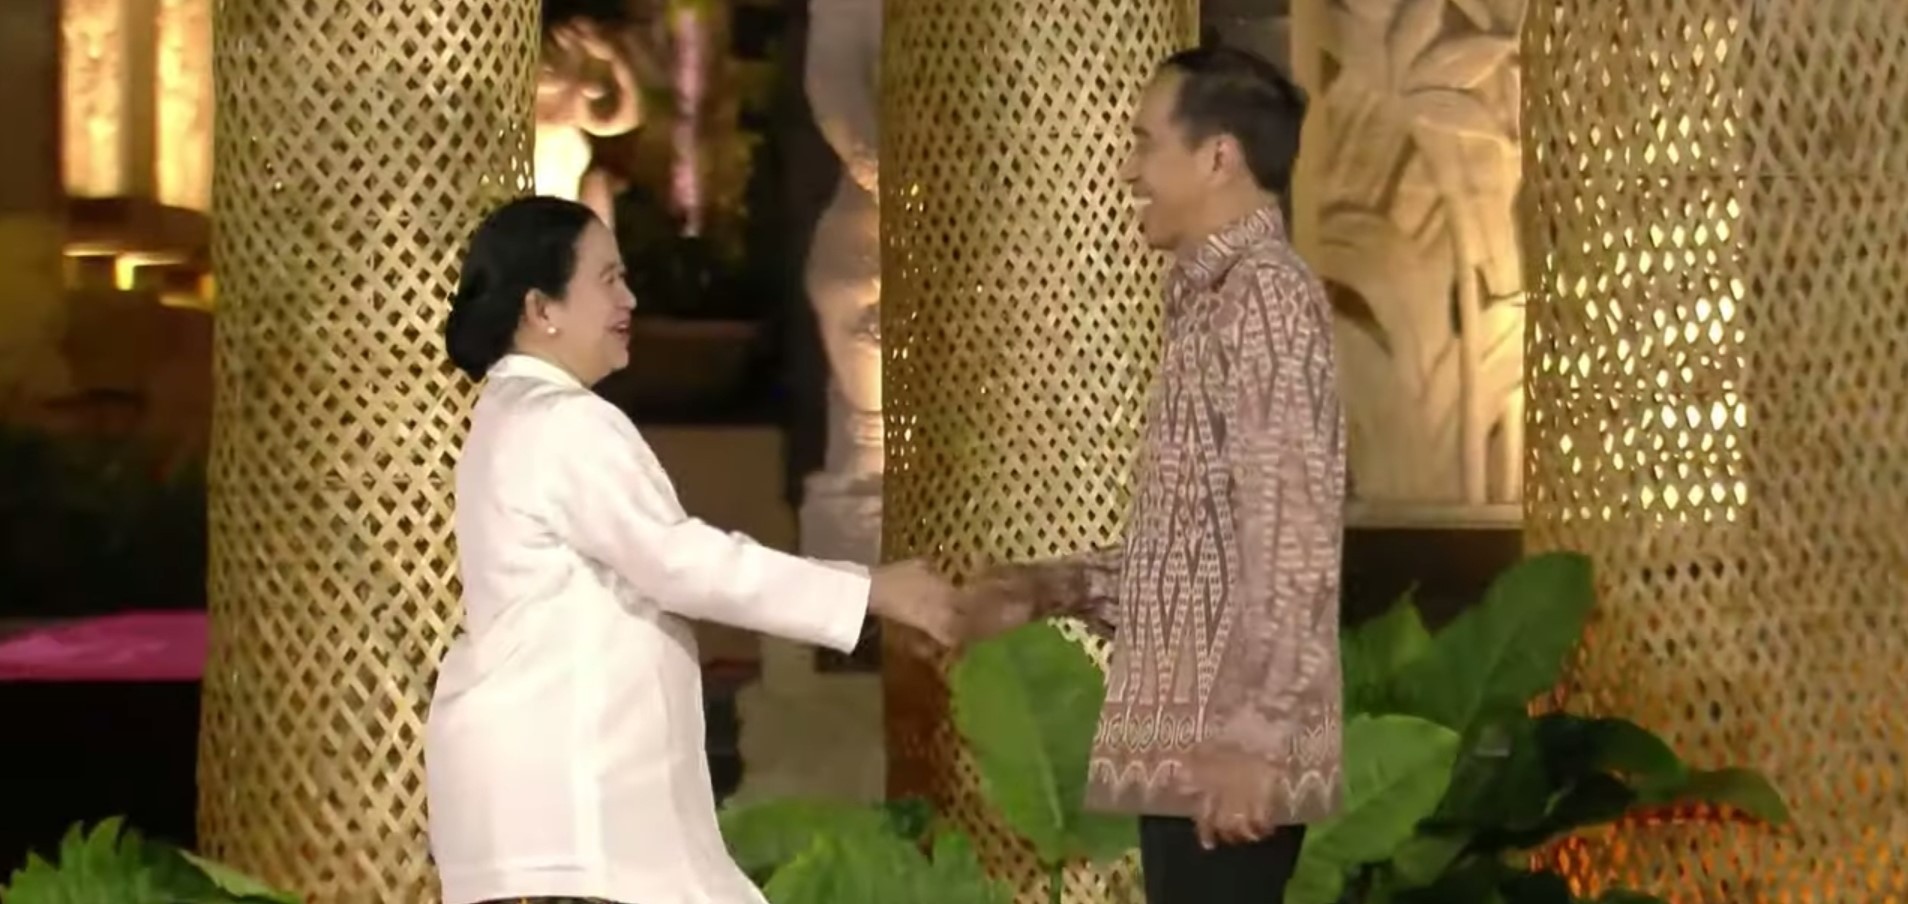 Momen Jokowi Bersalaman dengan Puan saat Gala Dinner KTT WWF